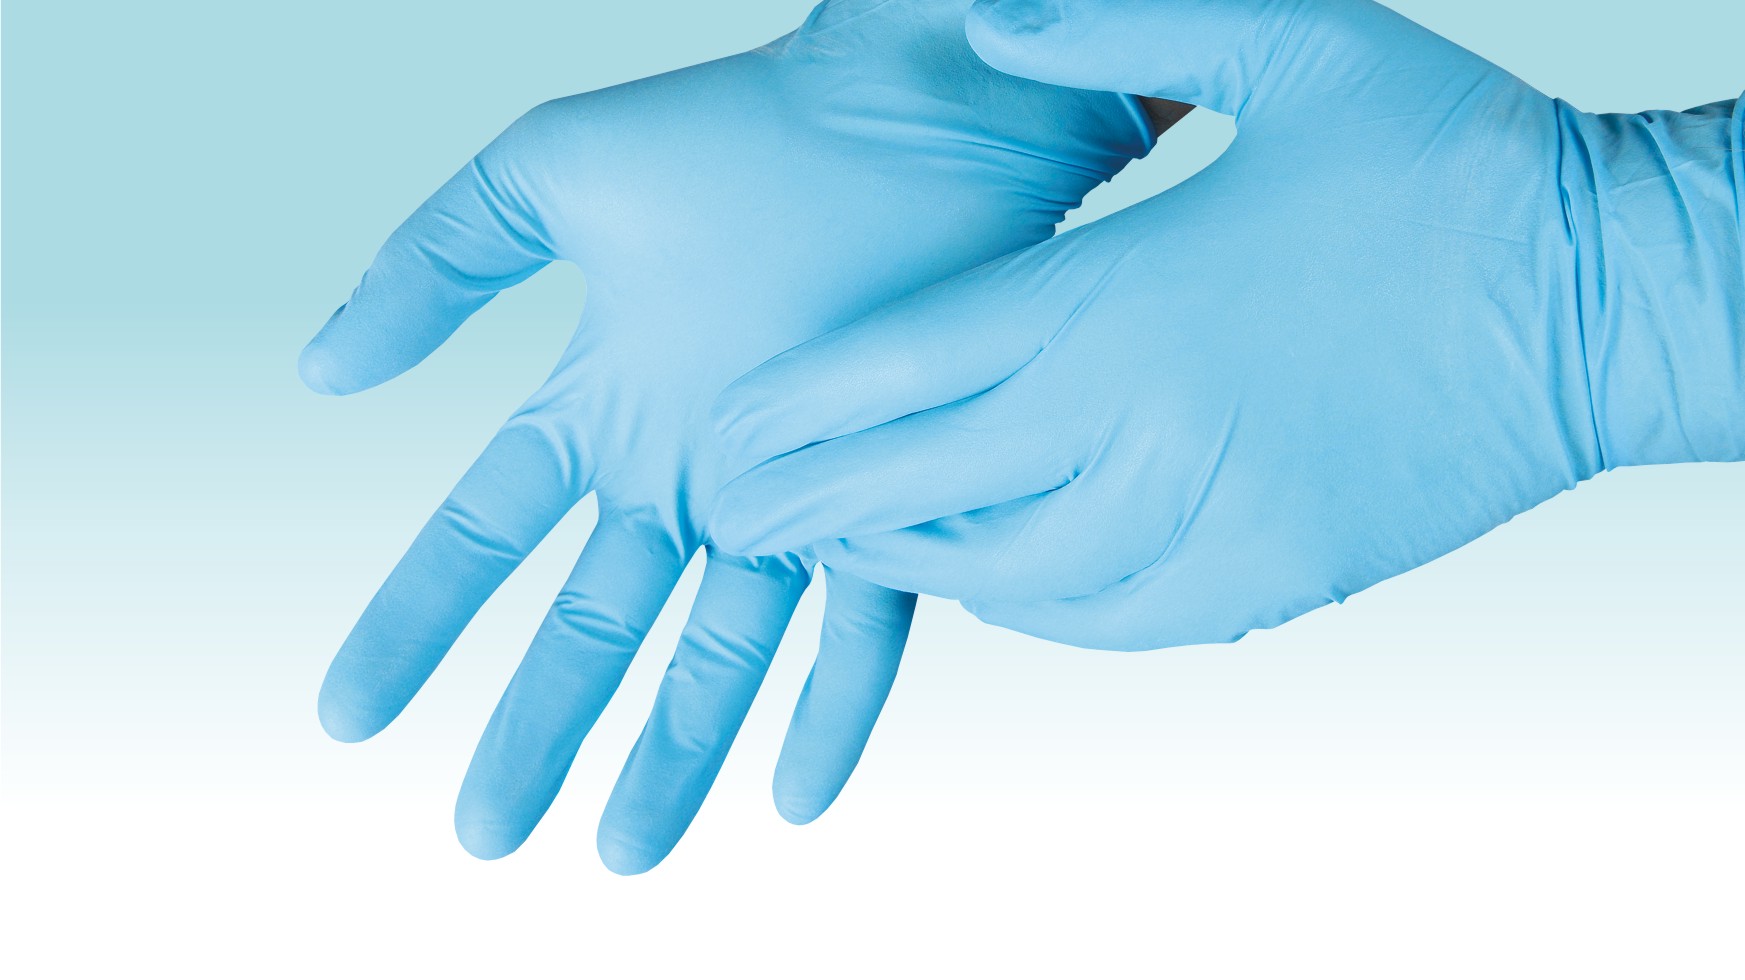 Стоматологические стерильные перчатки с полимерным покрытием синего цвета демонстрируются надетыми на руки